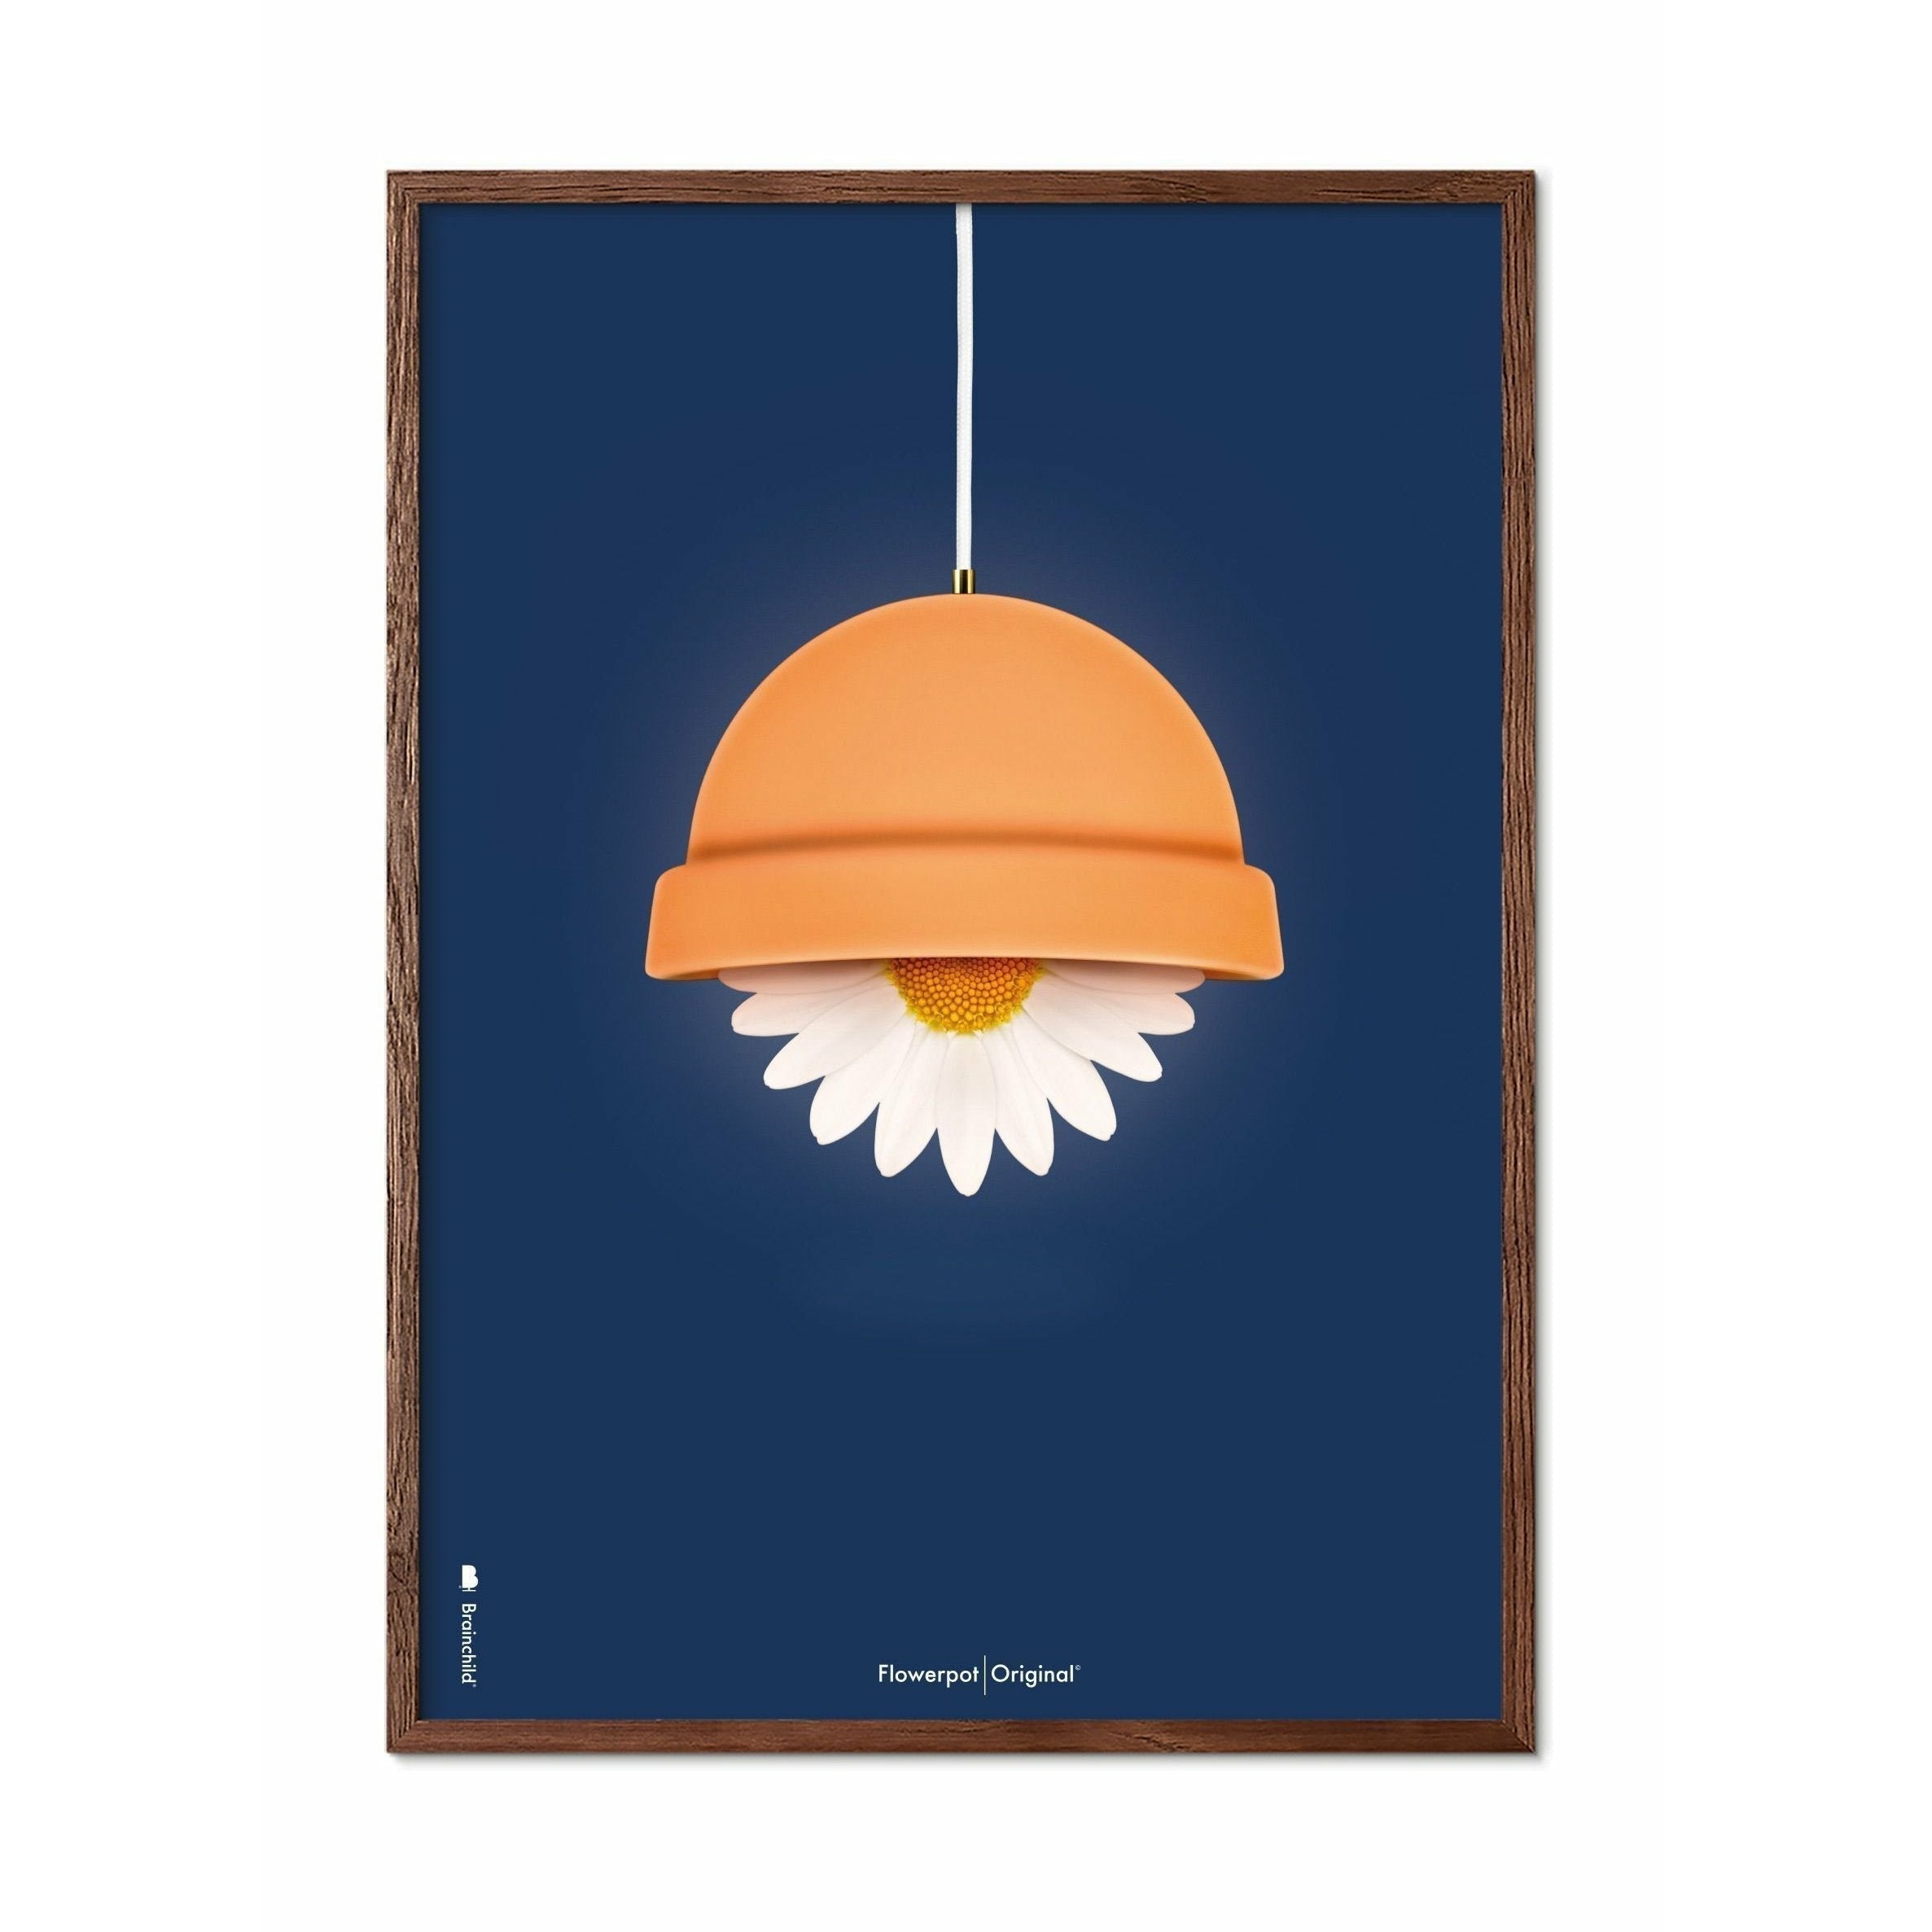 Brainchild Flowerpot Klassisk Plakat, Ramme I Mørkt Træ 70X100 Cm, Mørkeblå Baggrund